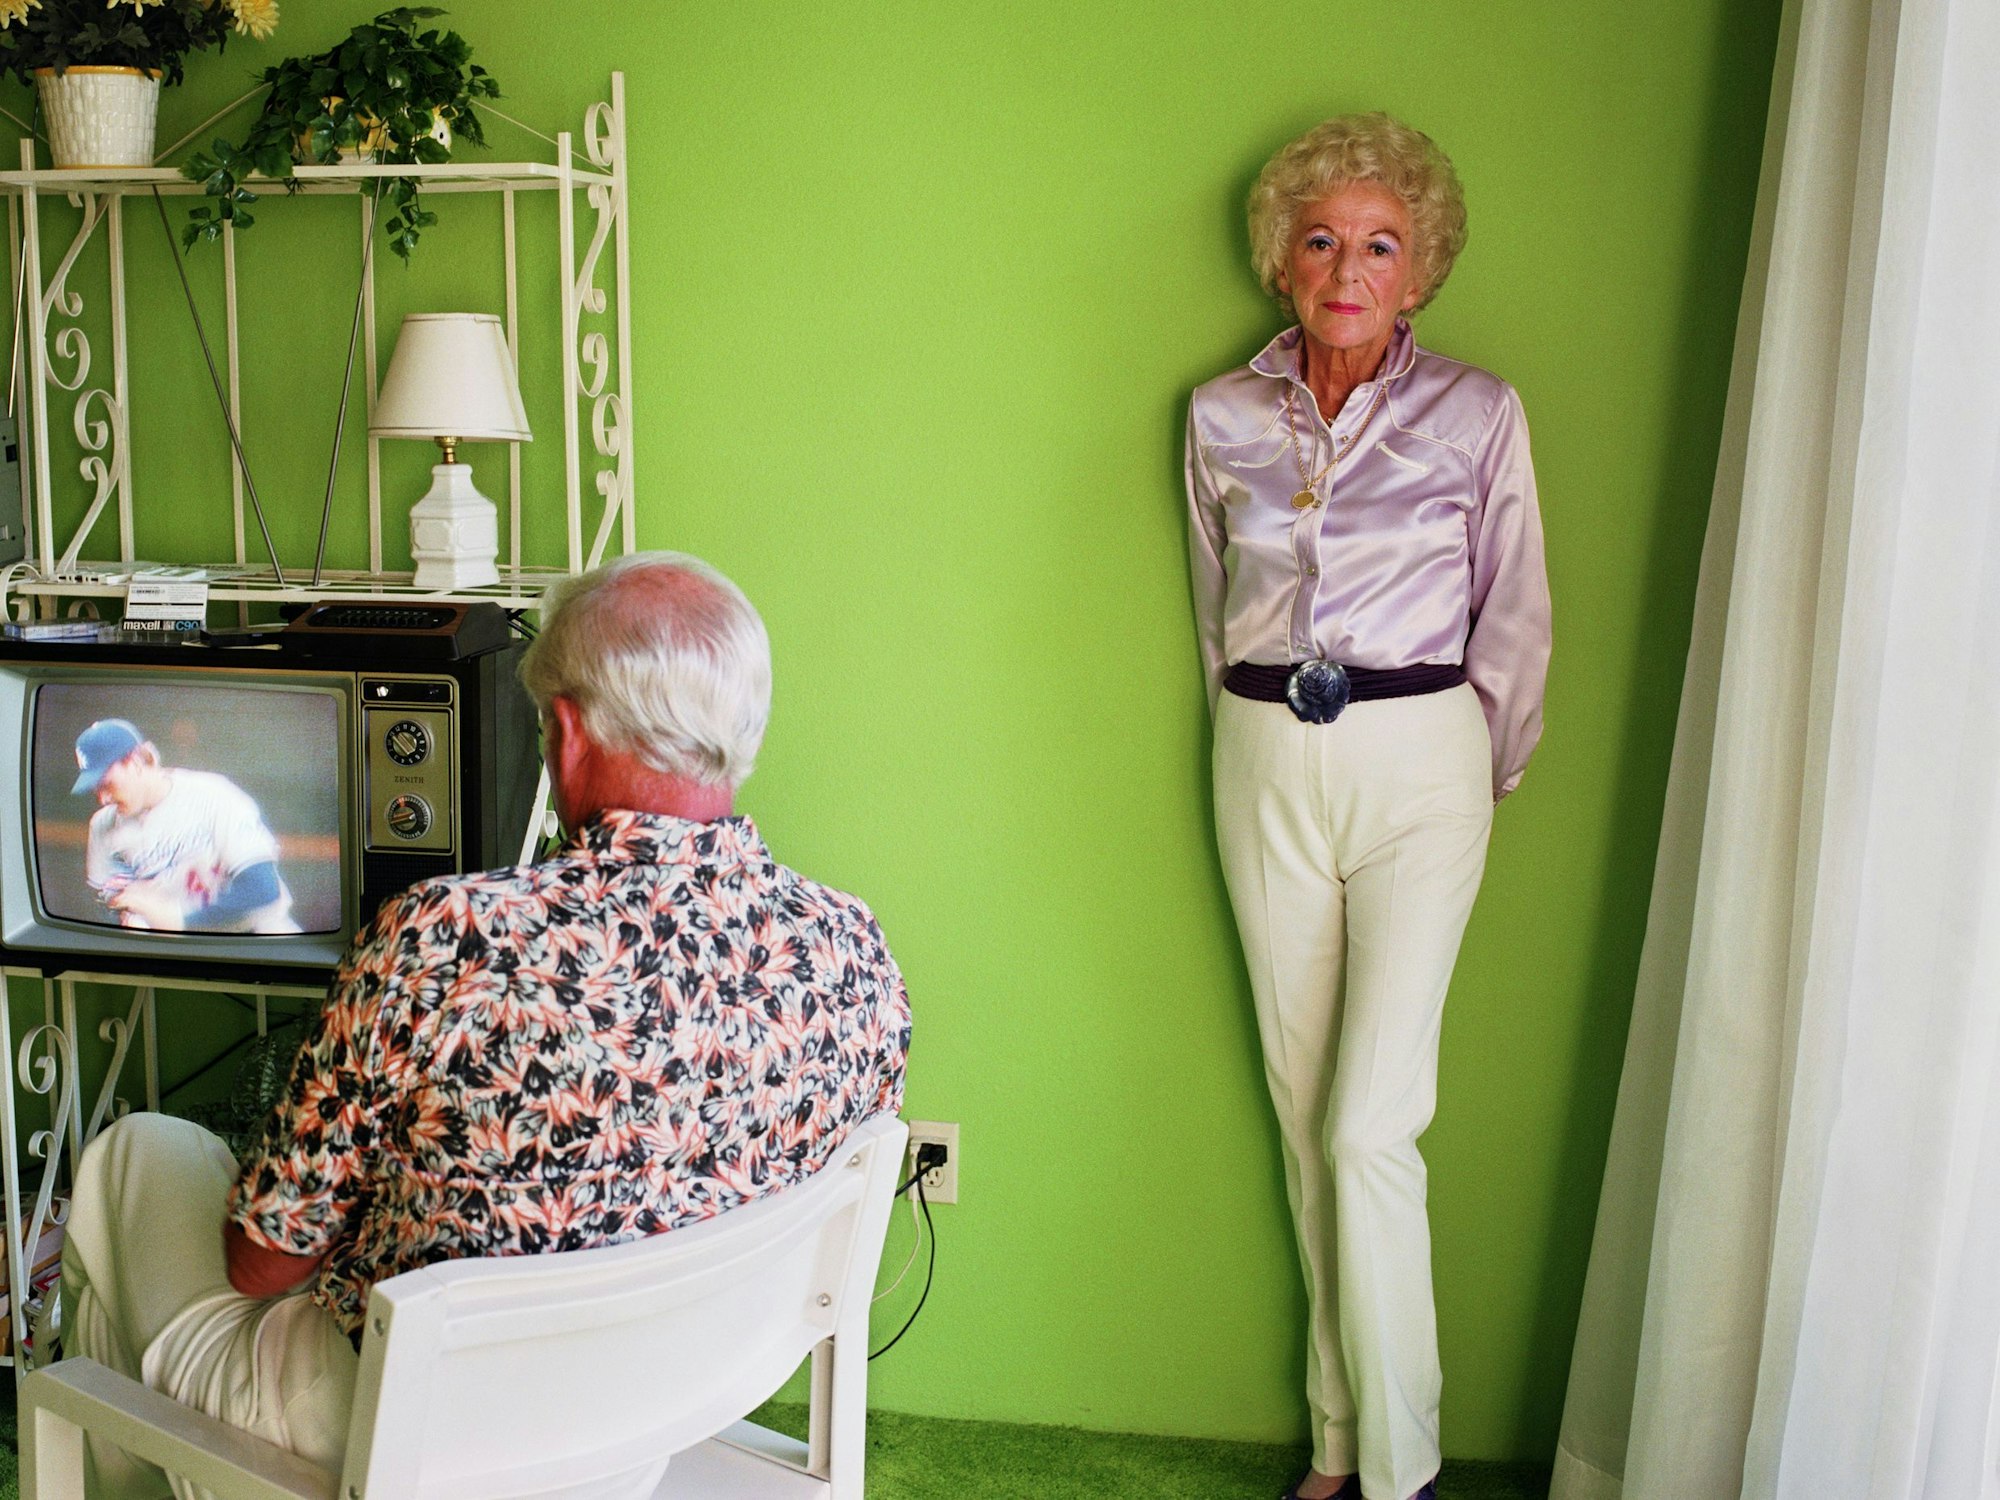 Ein Mann schaut fern, eine Frau lehnt an einer grünen Wand.